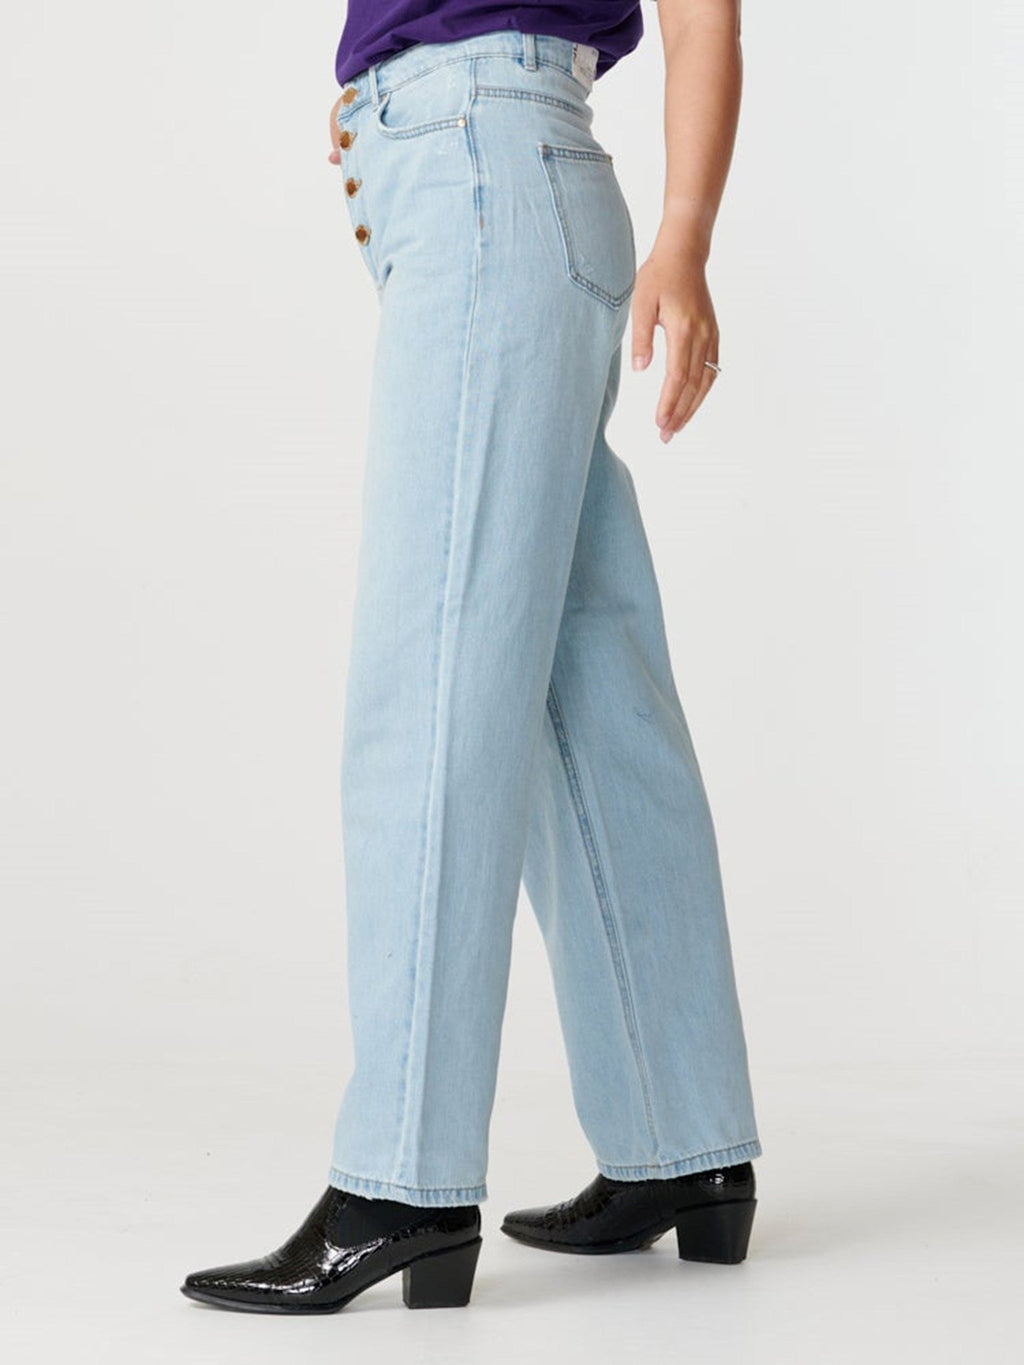 Šťavnaté džínsy (široká noha) - svetlá džínsová modrá